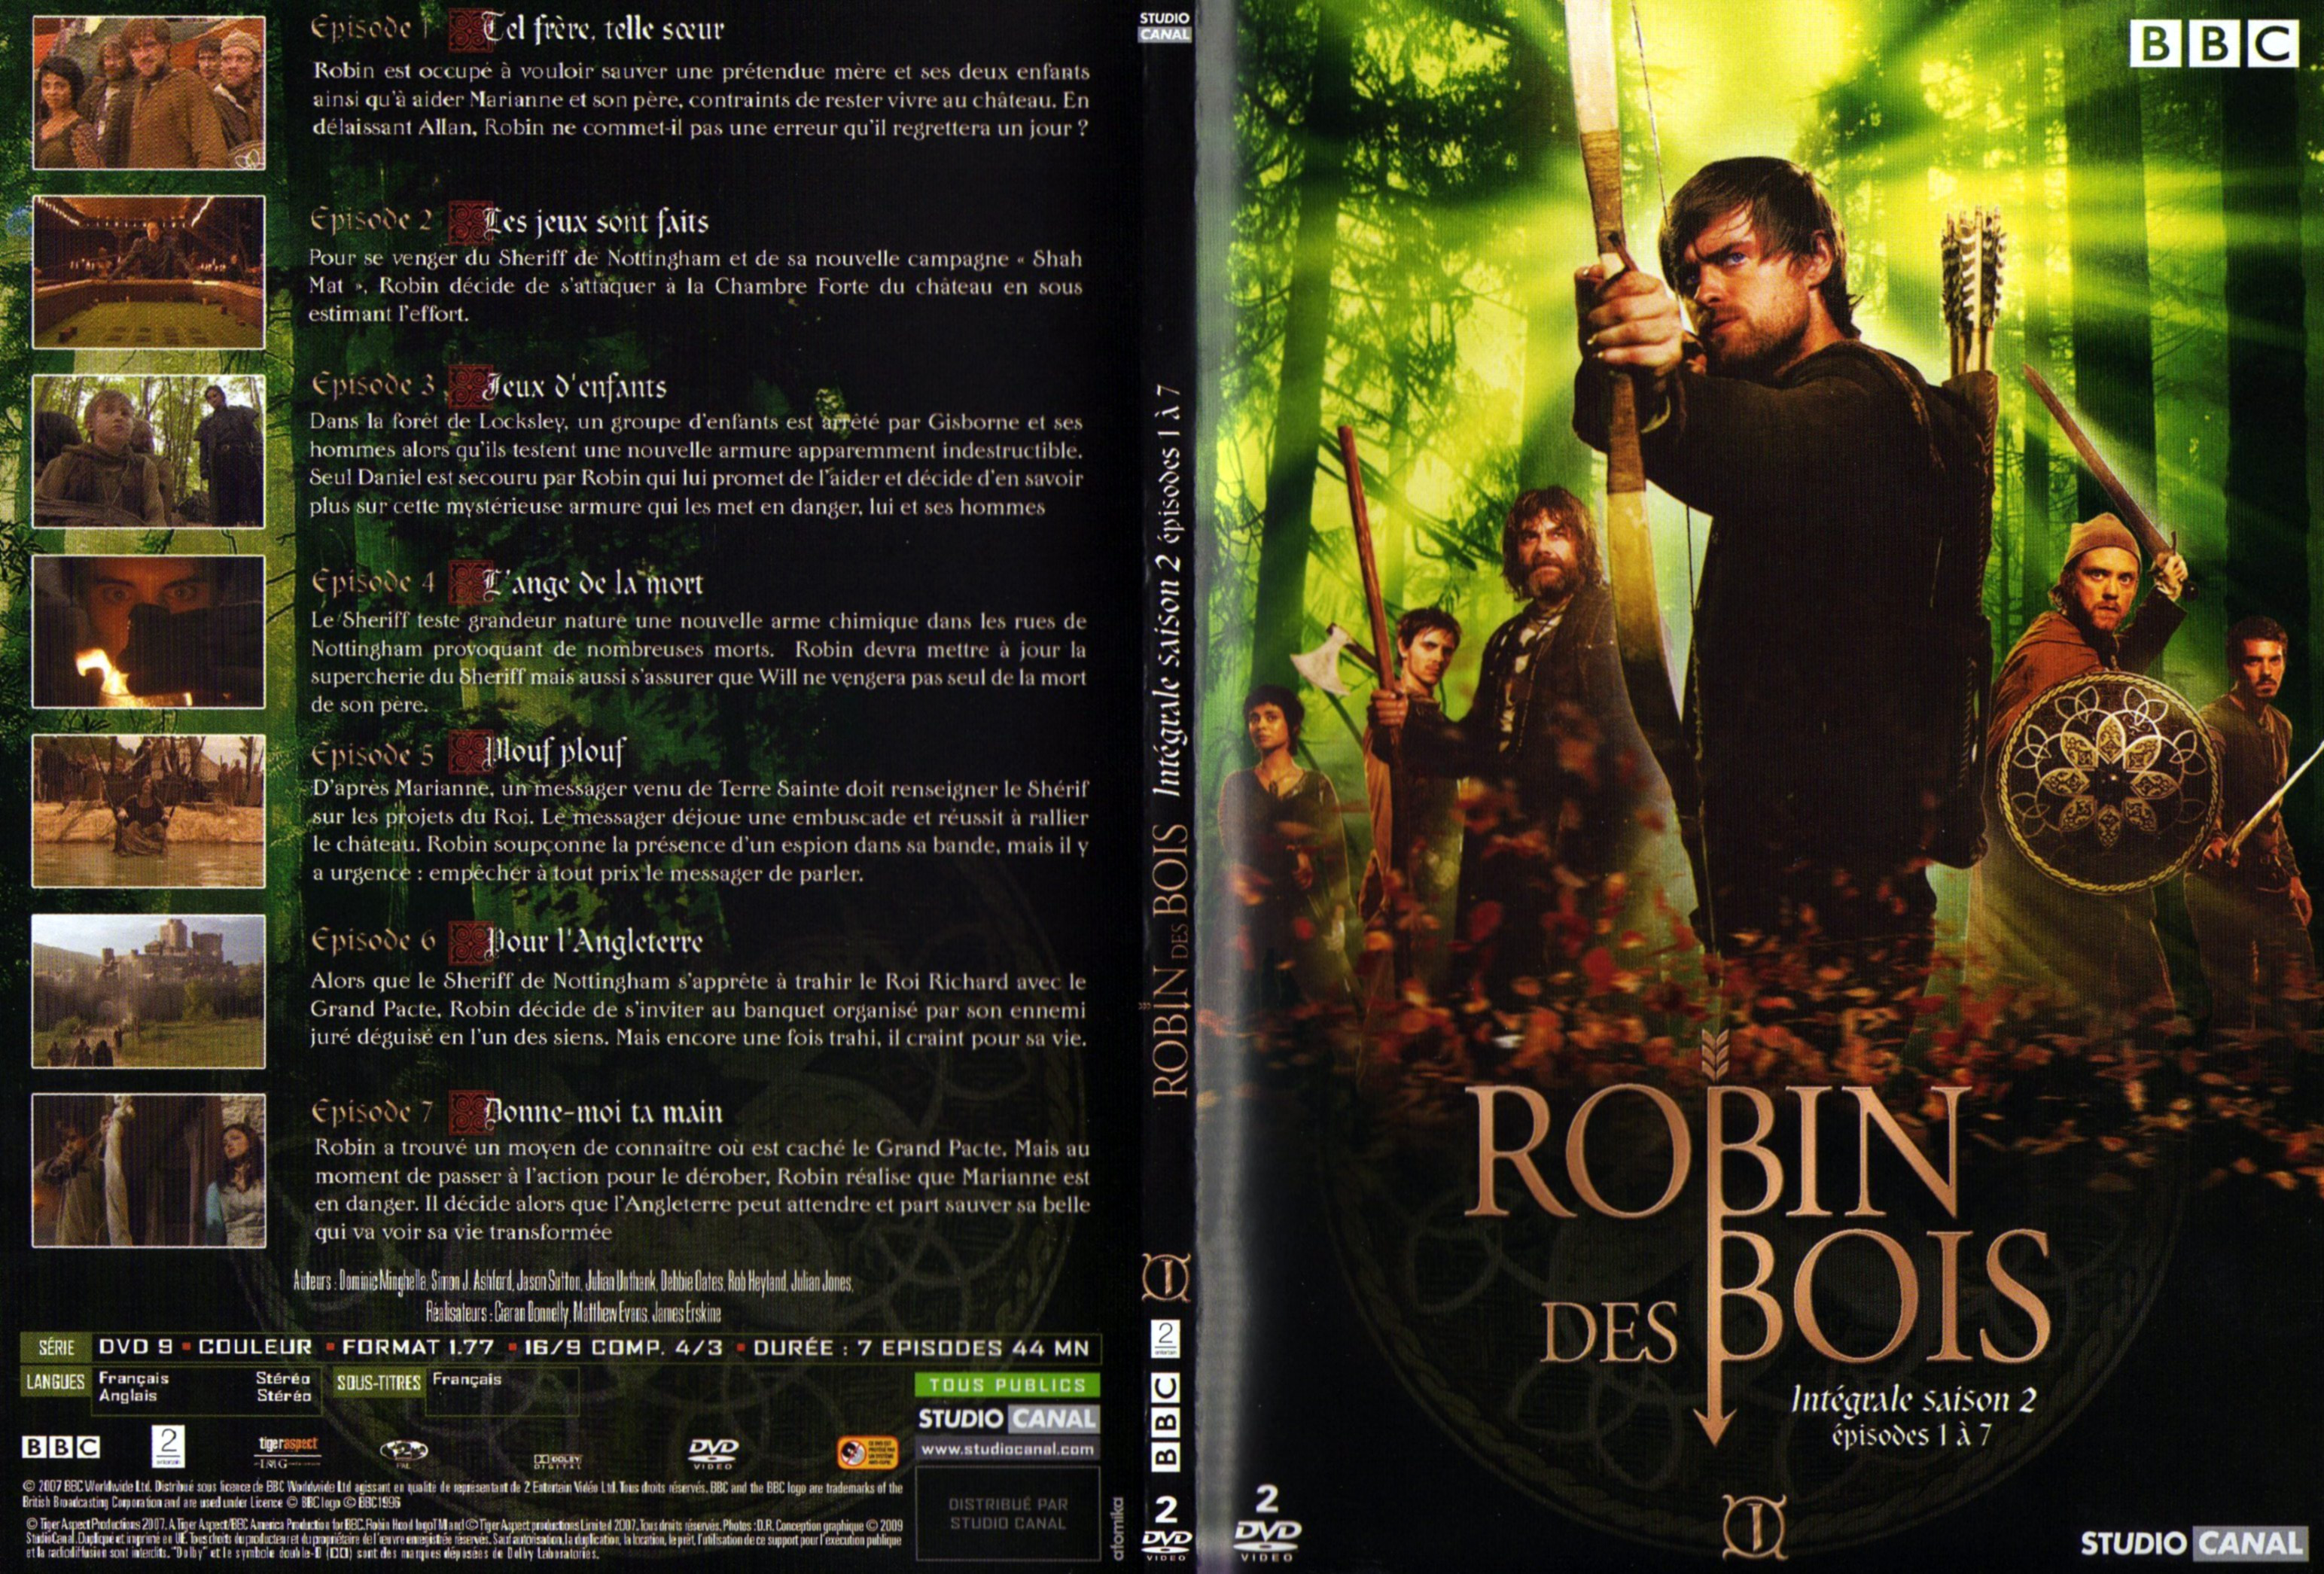 Jaquette DVD Robin des bois Saison 2 DVD 1